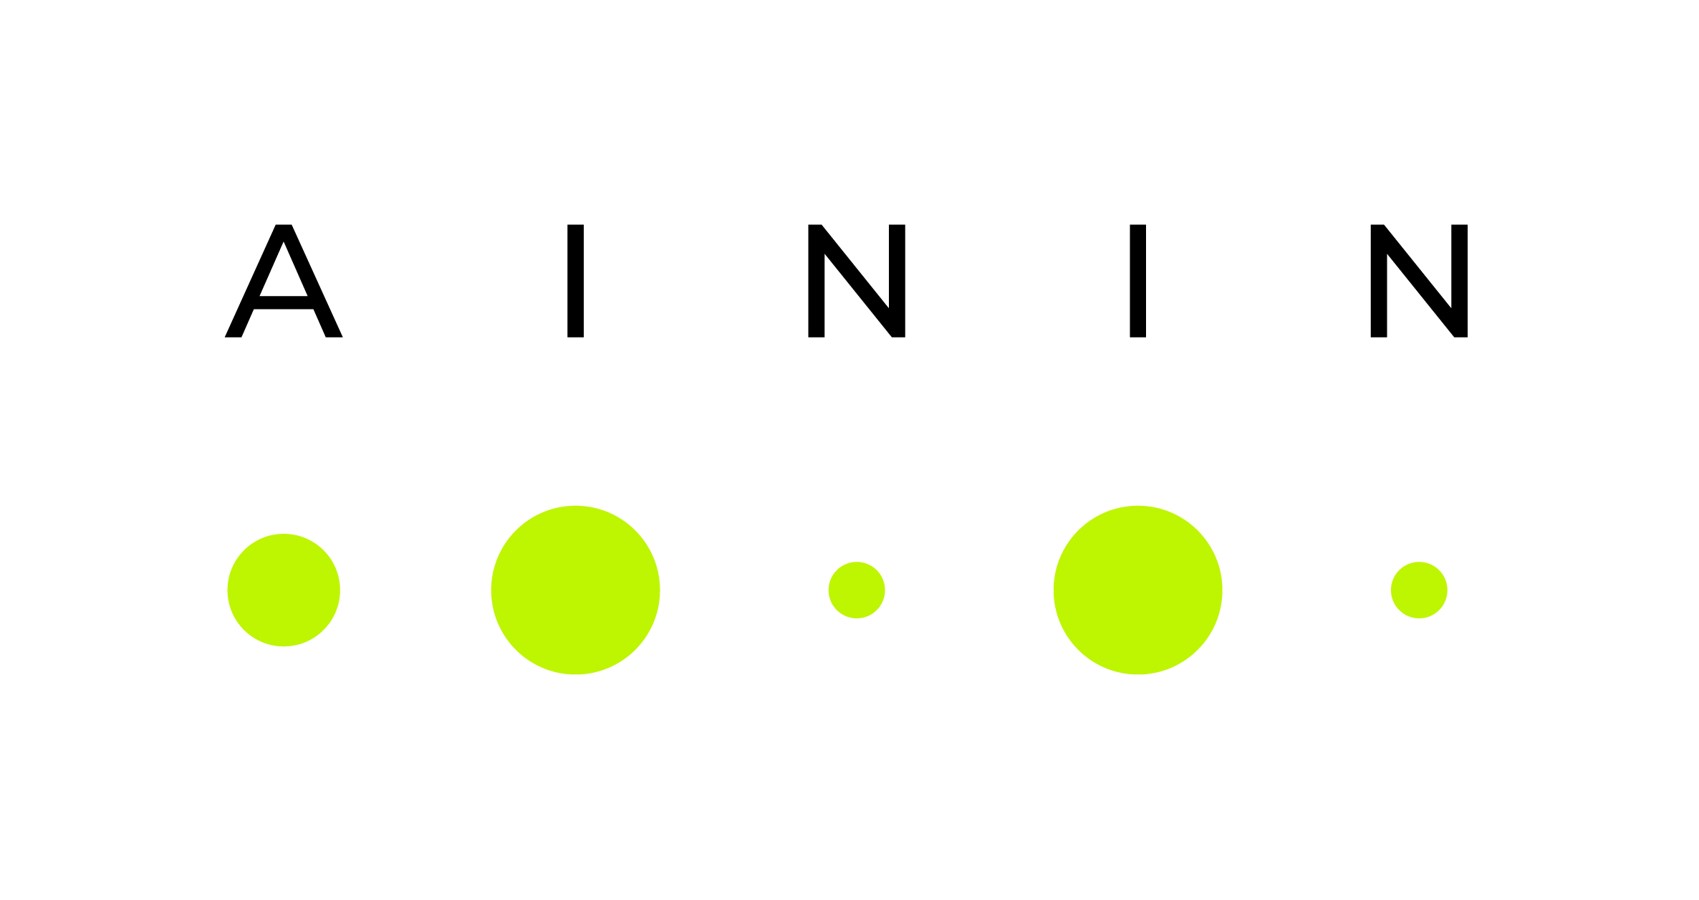 Abbildung des AININ Schriftzuges mit vier neongrünen Punkten in unterschiedlicher Größe darunter